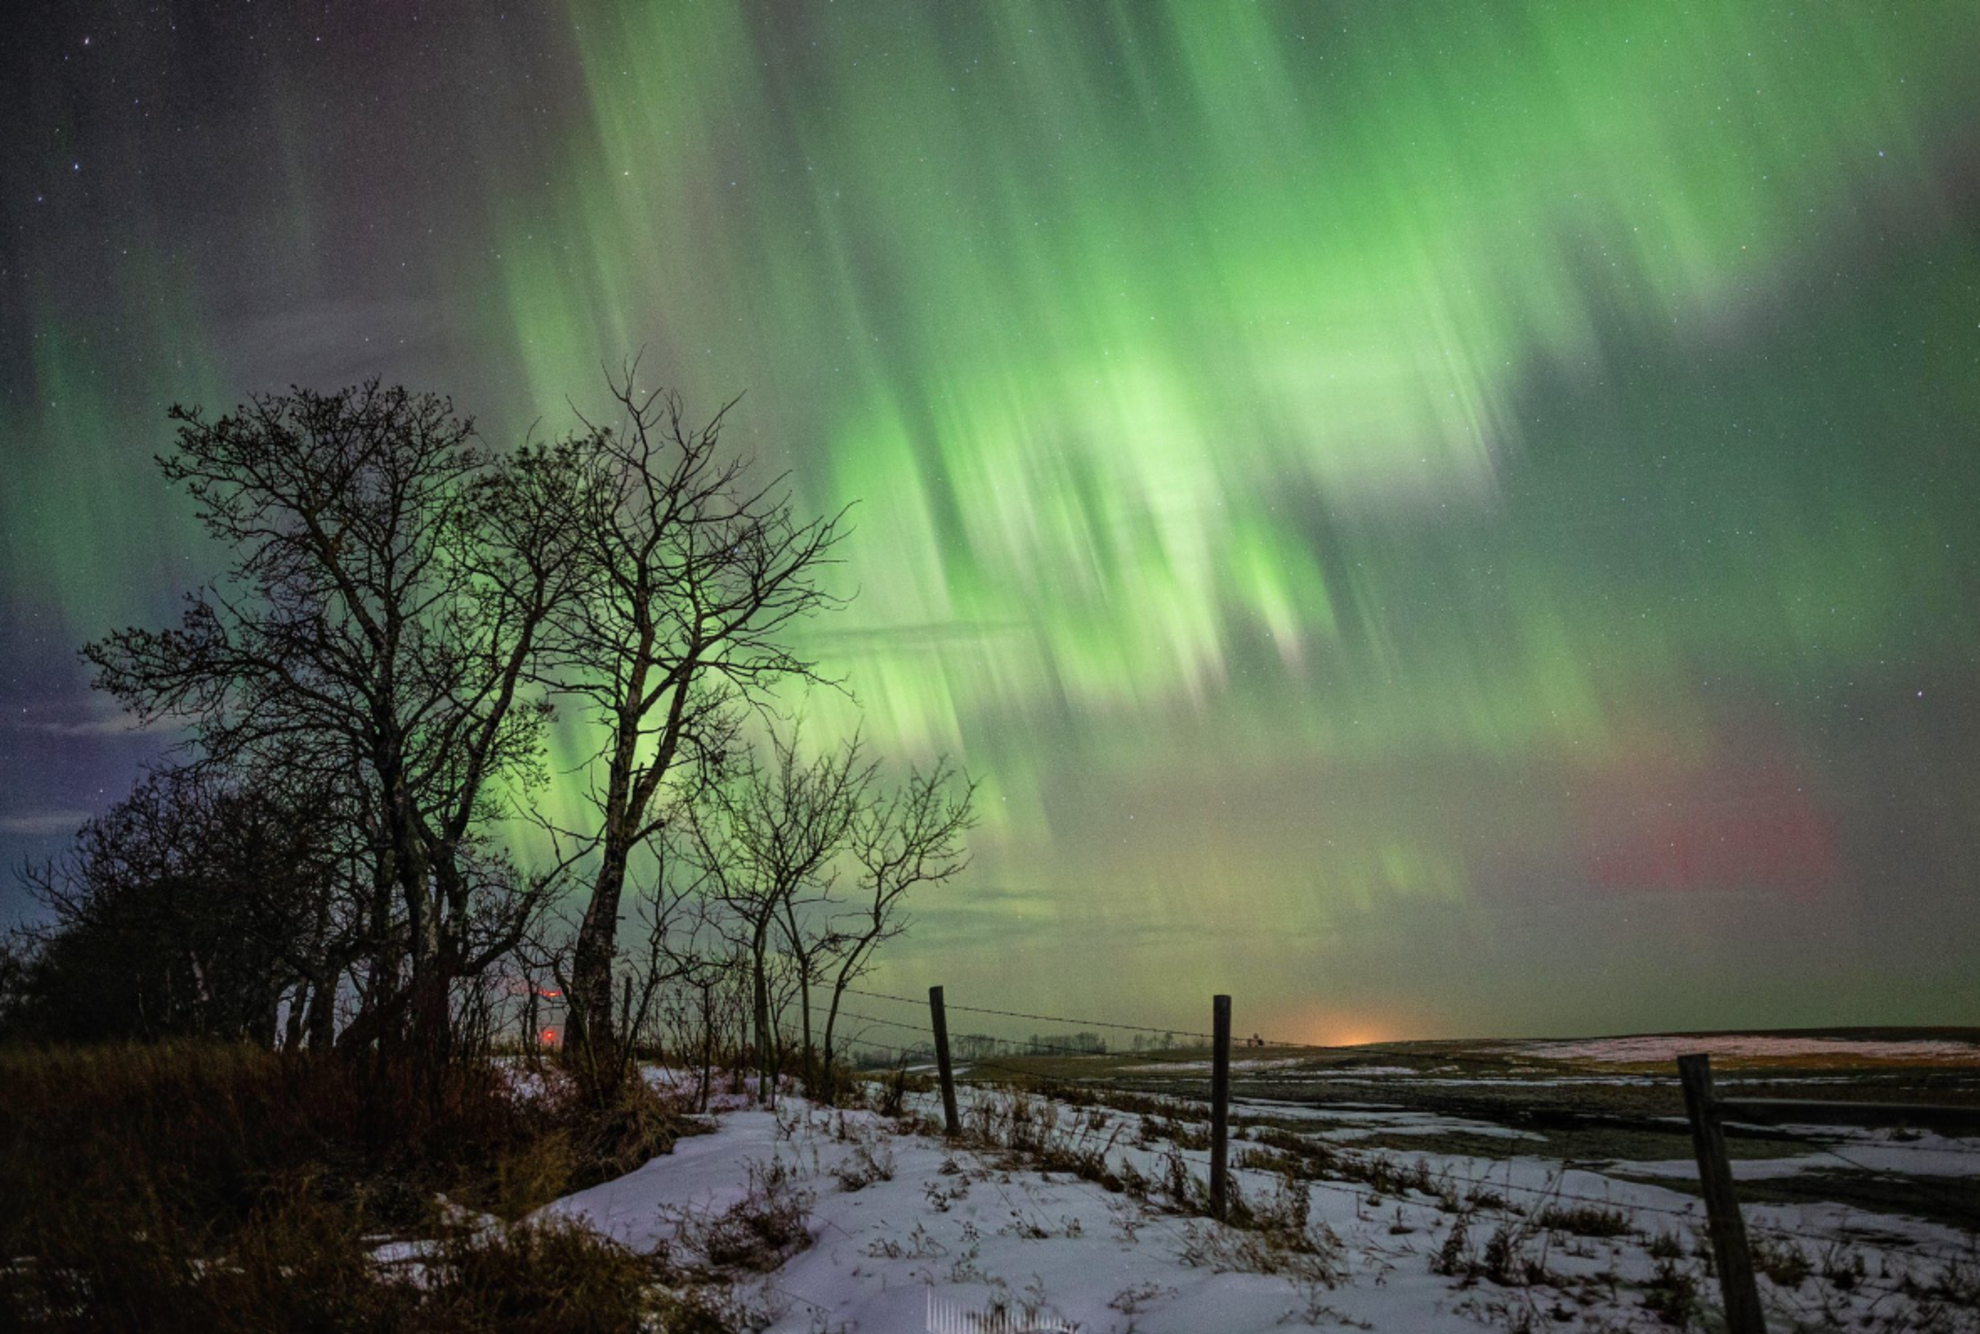 PHOTOS: Vivid auroras dazzle over Europe, North America during solar storm